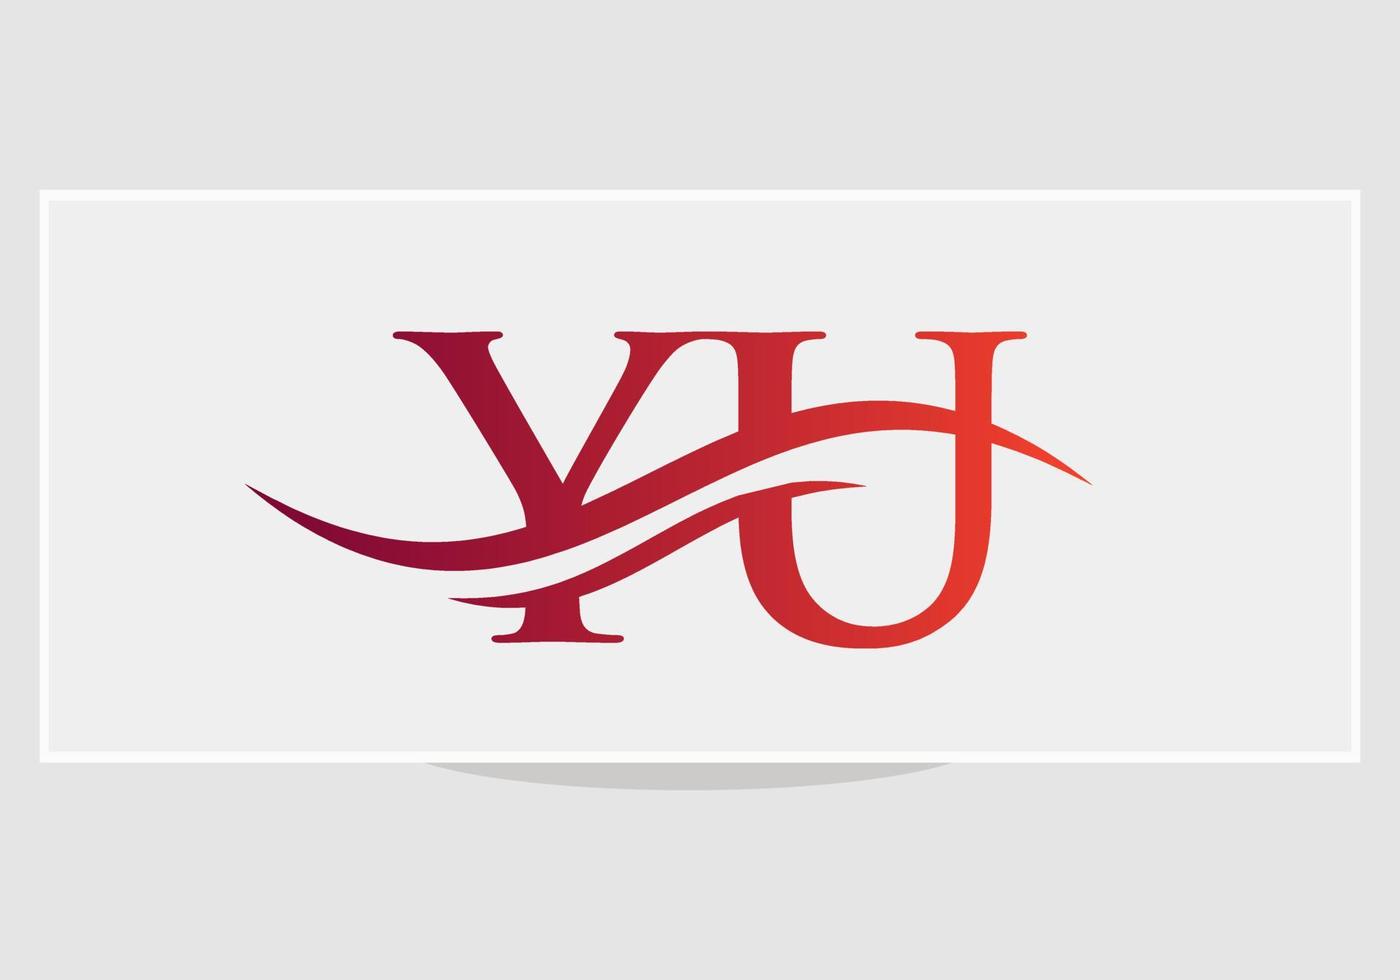 modernes yu-logo-design für geschäfts- und firmenidentität. kreativer yu-brief mit luxuskonzept vektor